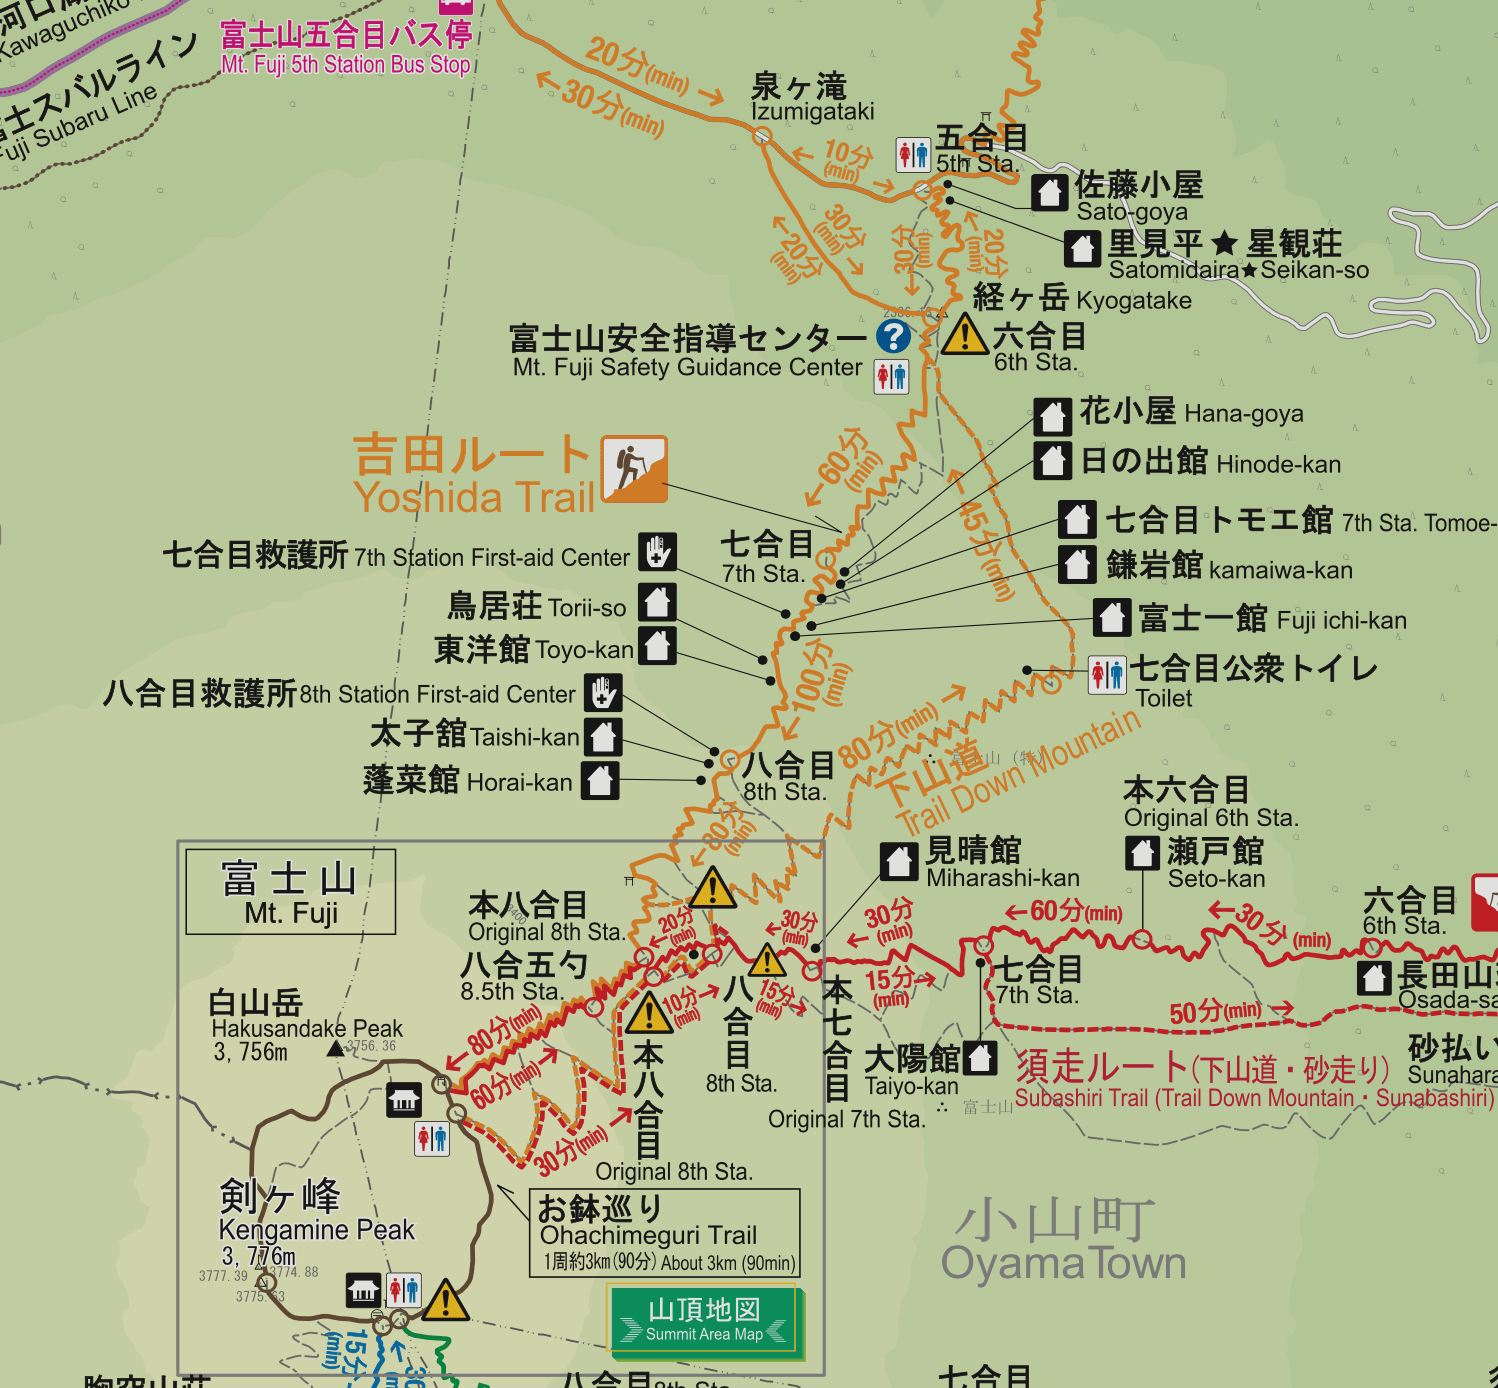 第一條介紹的富士山登山路線是吉田路線，沿途有最多的山間小屋而且路線最易行走。